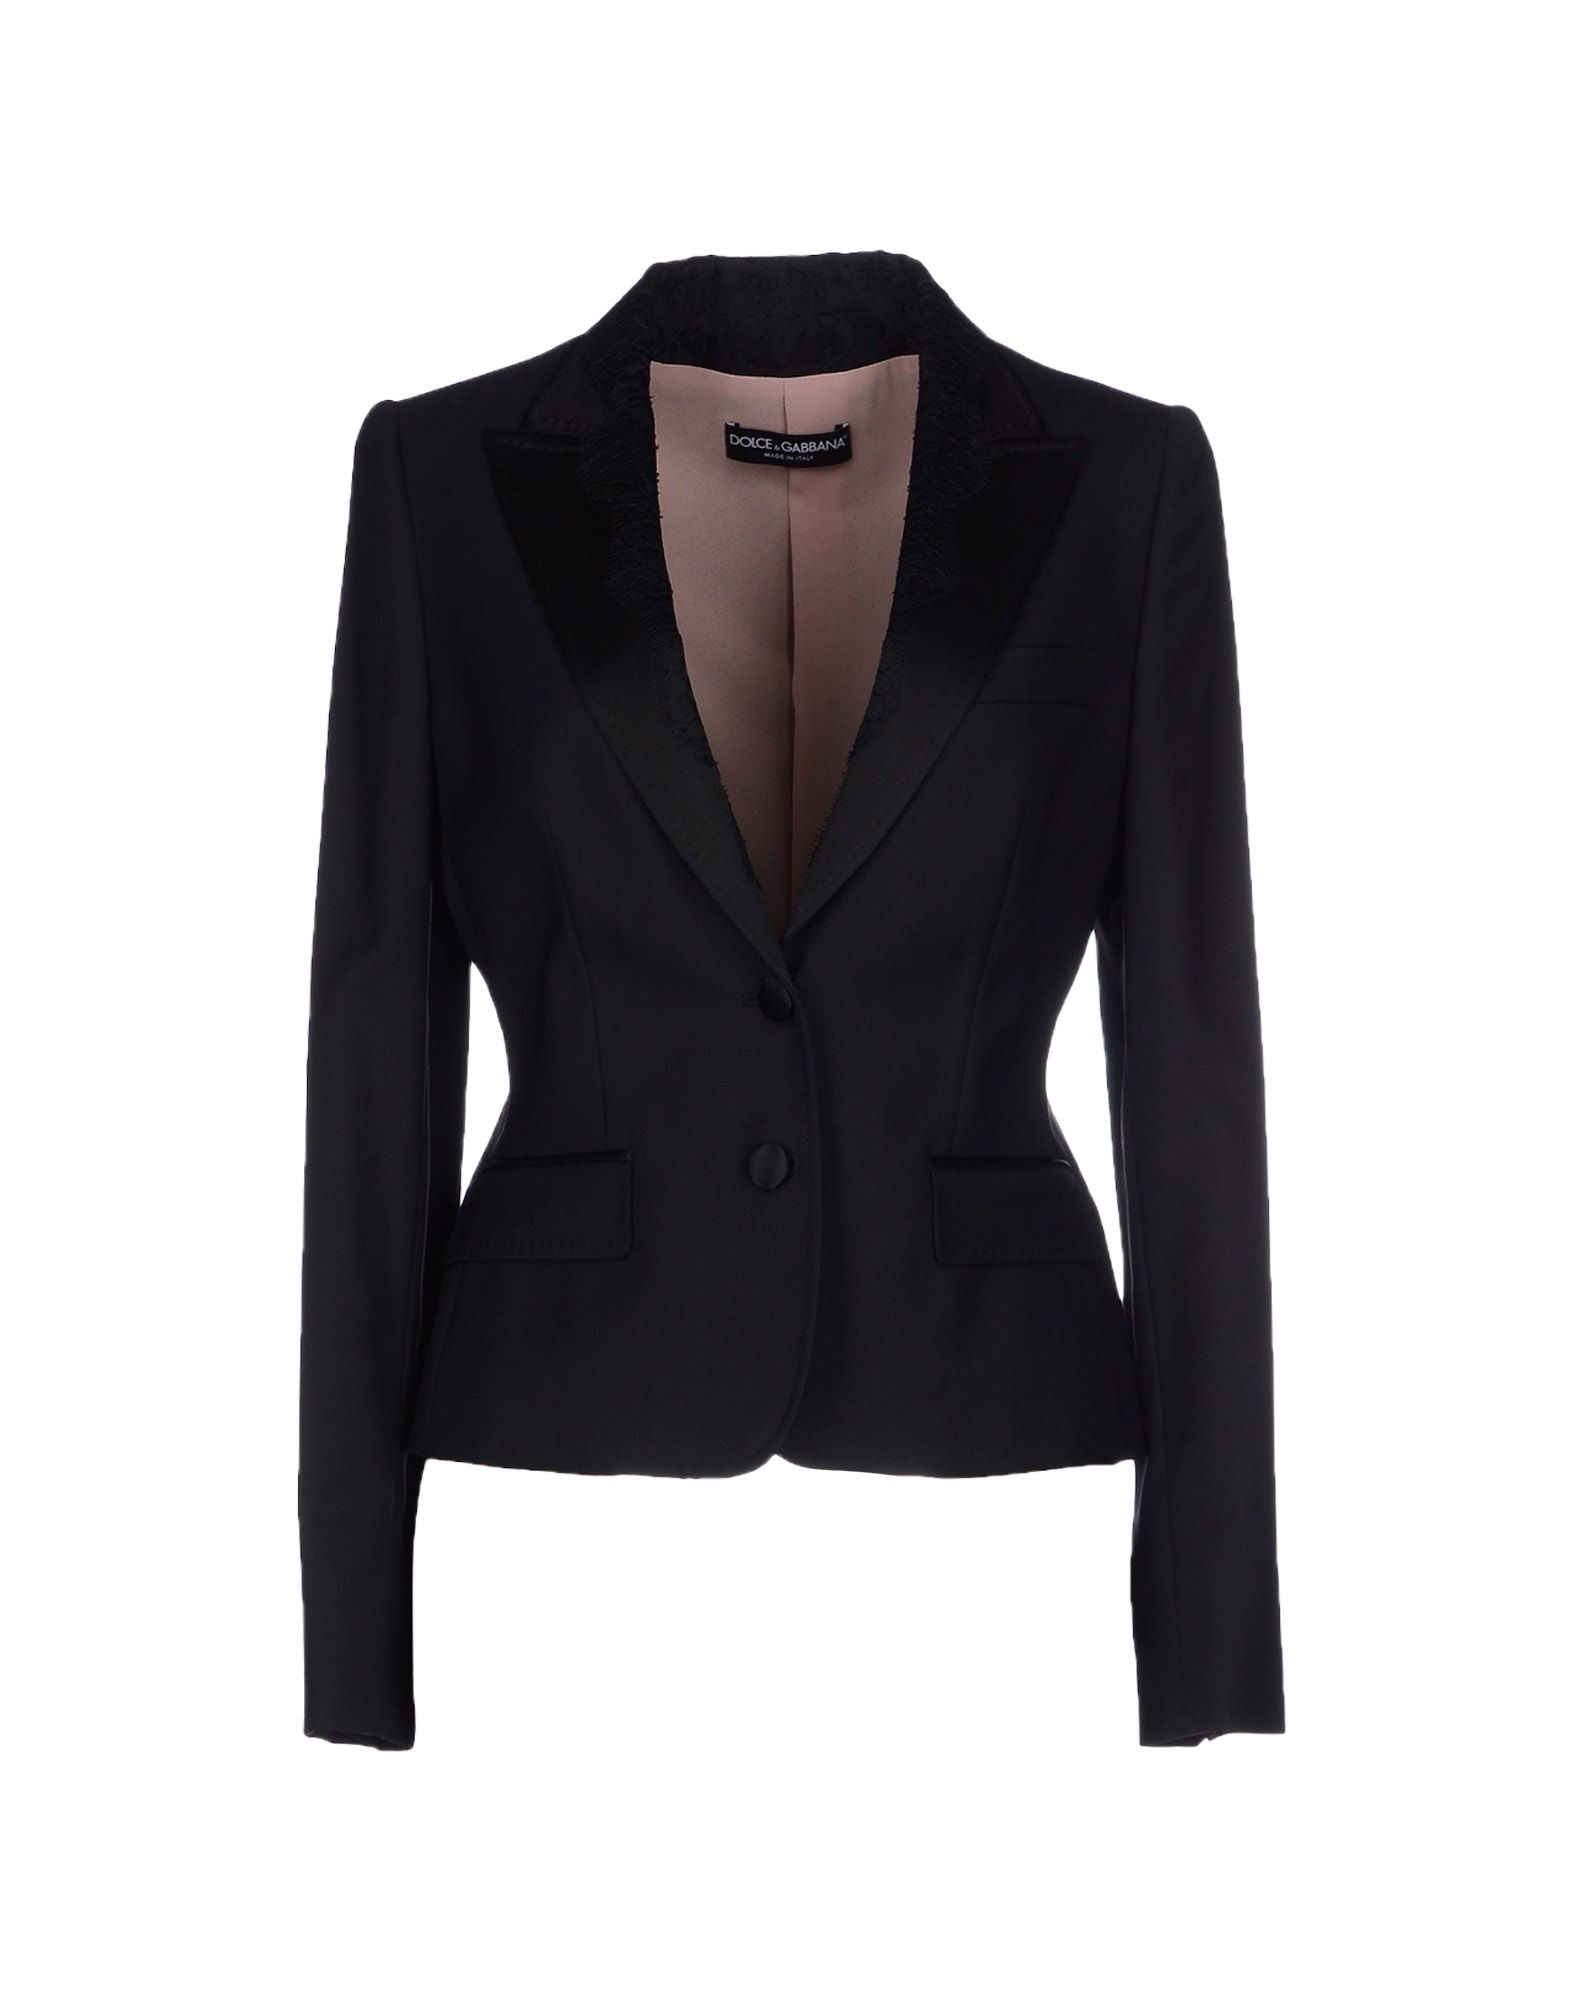 Lyst - Dolce & Gabbana Blazer in Black